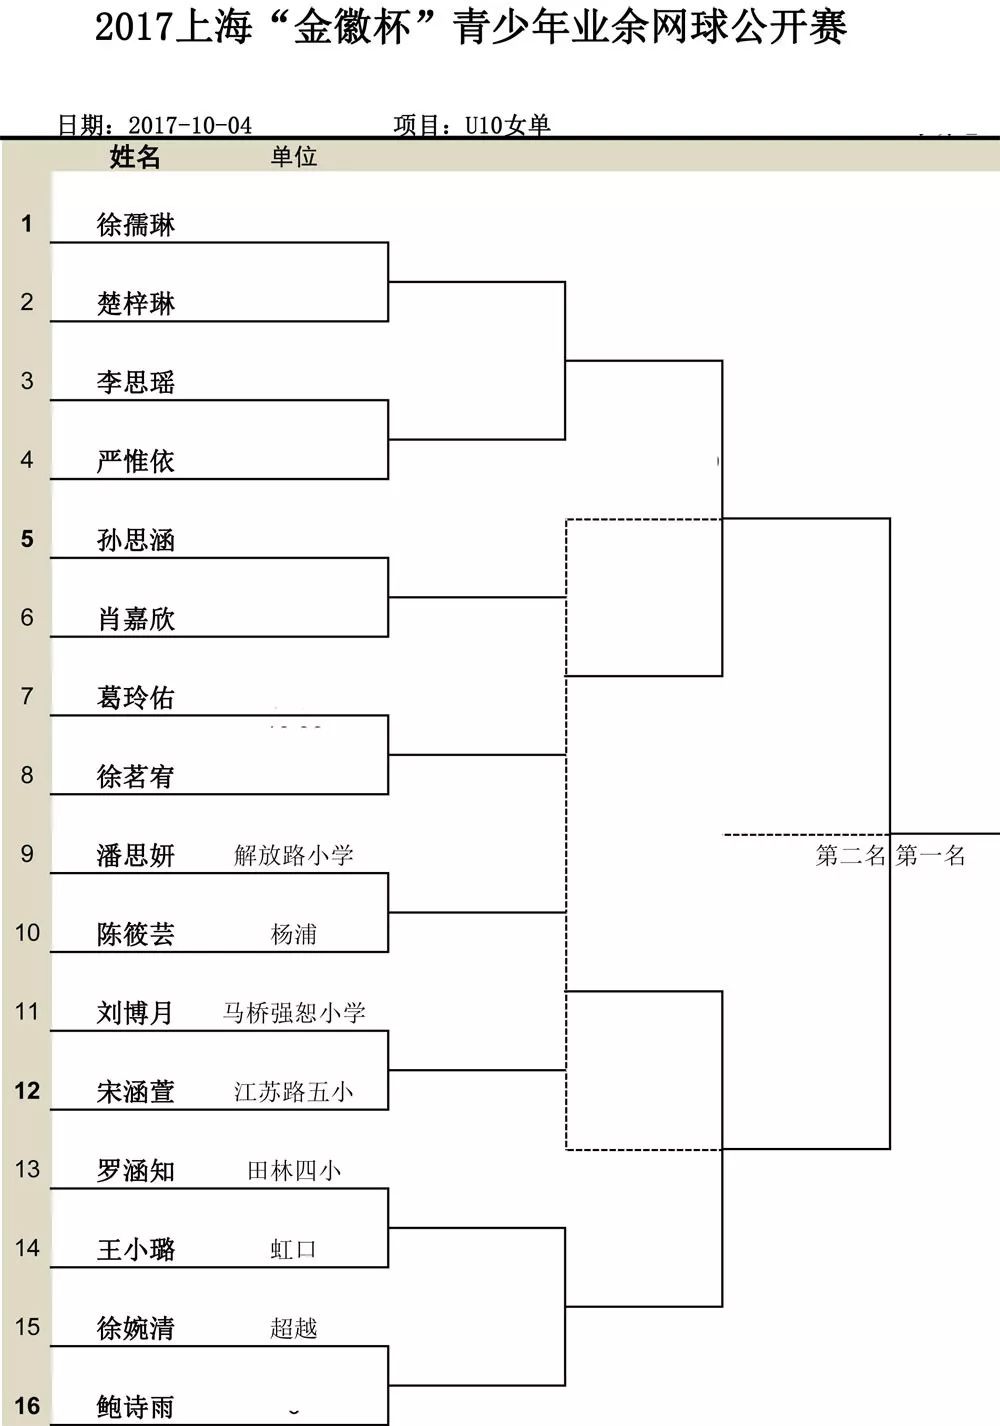 2017首届上海金徽杯市民网球节青少年网球赛对阵表公布